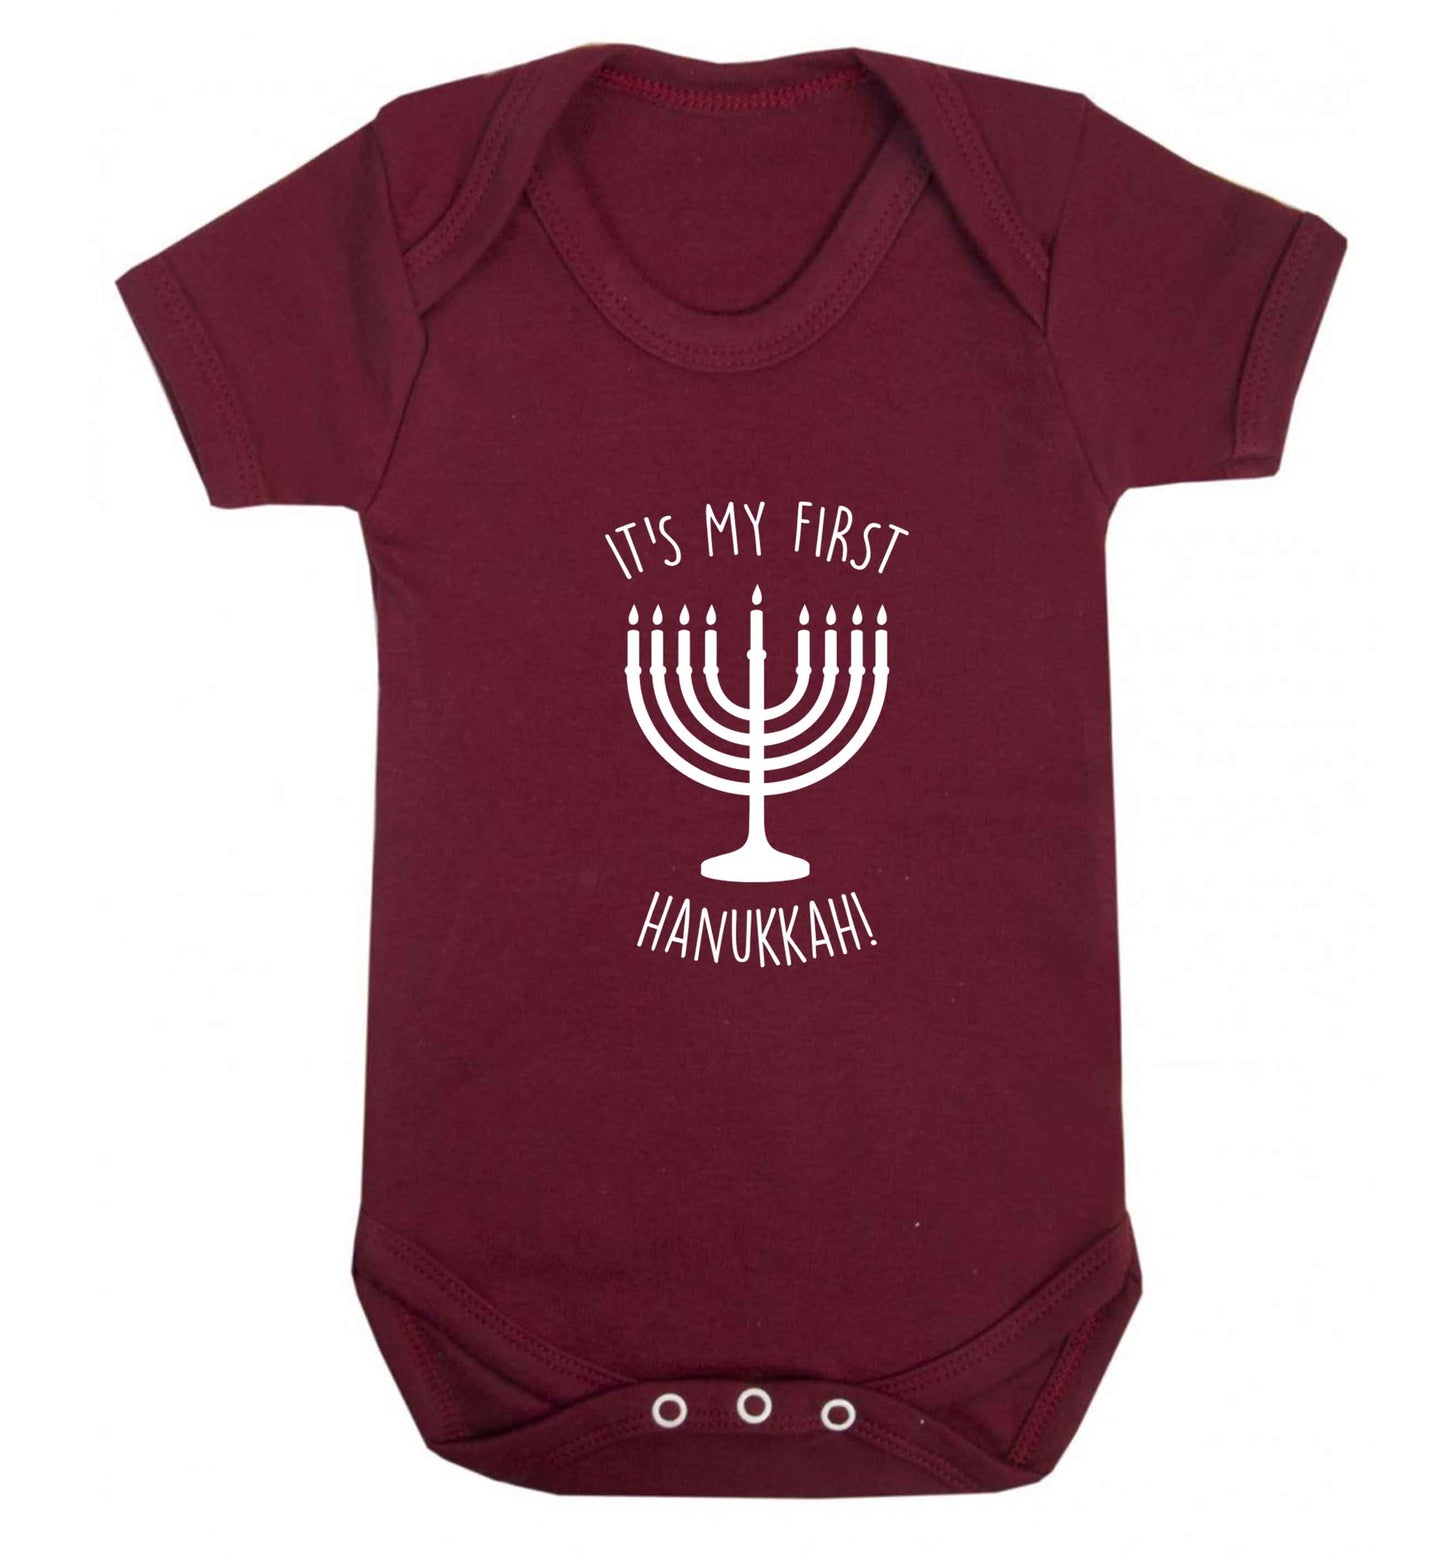 It's my first hanukkah baby vest maroon 18-24 months